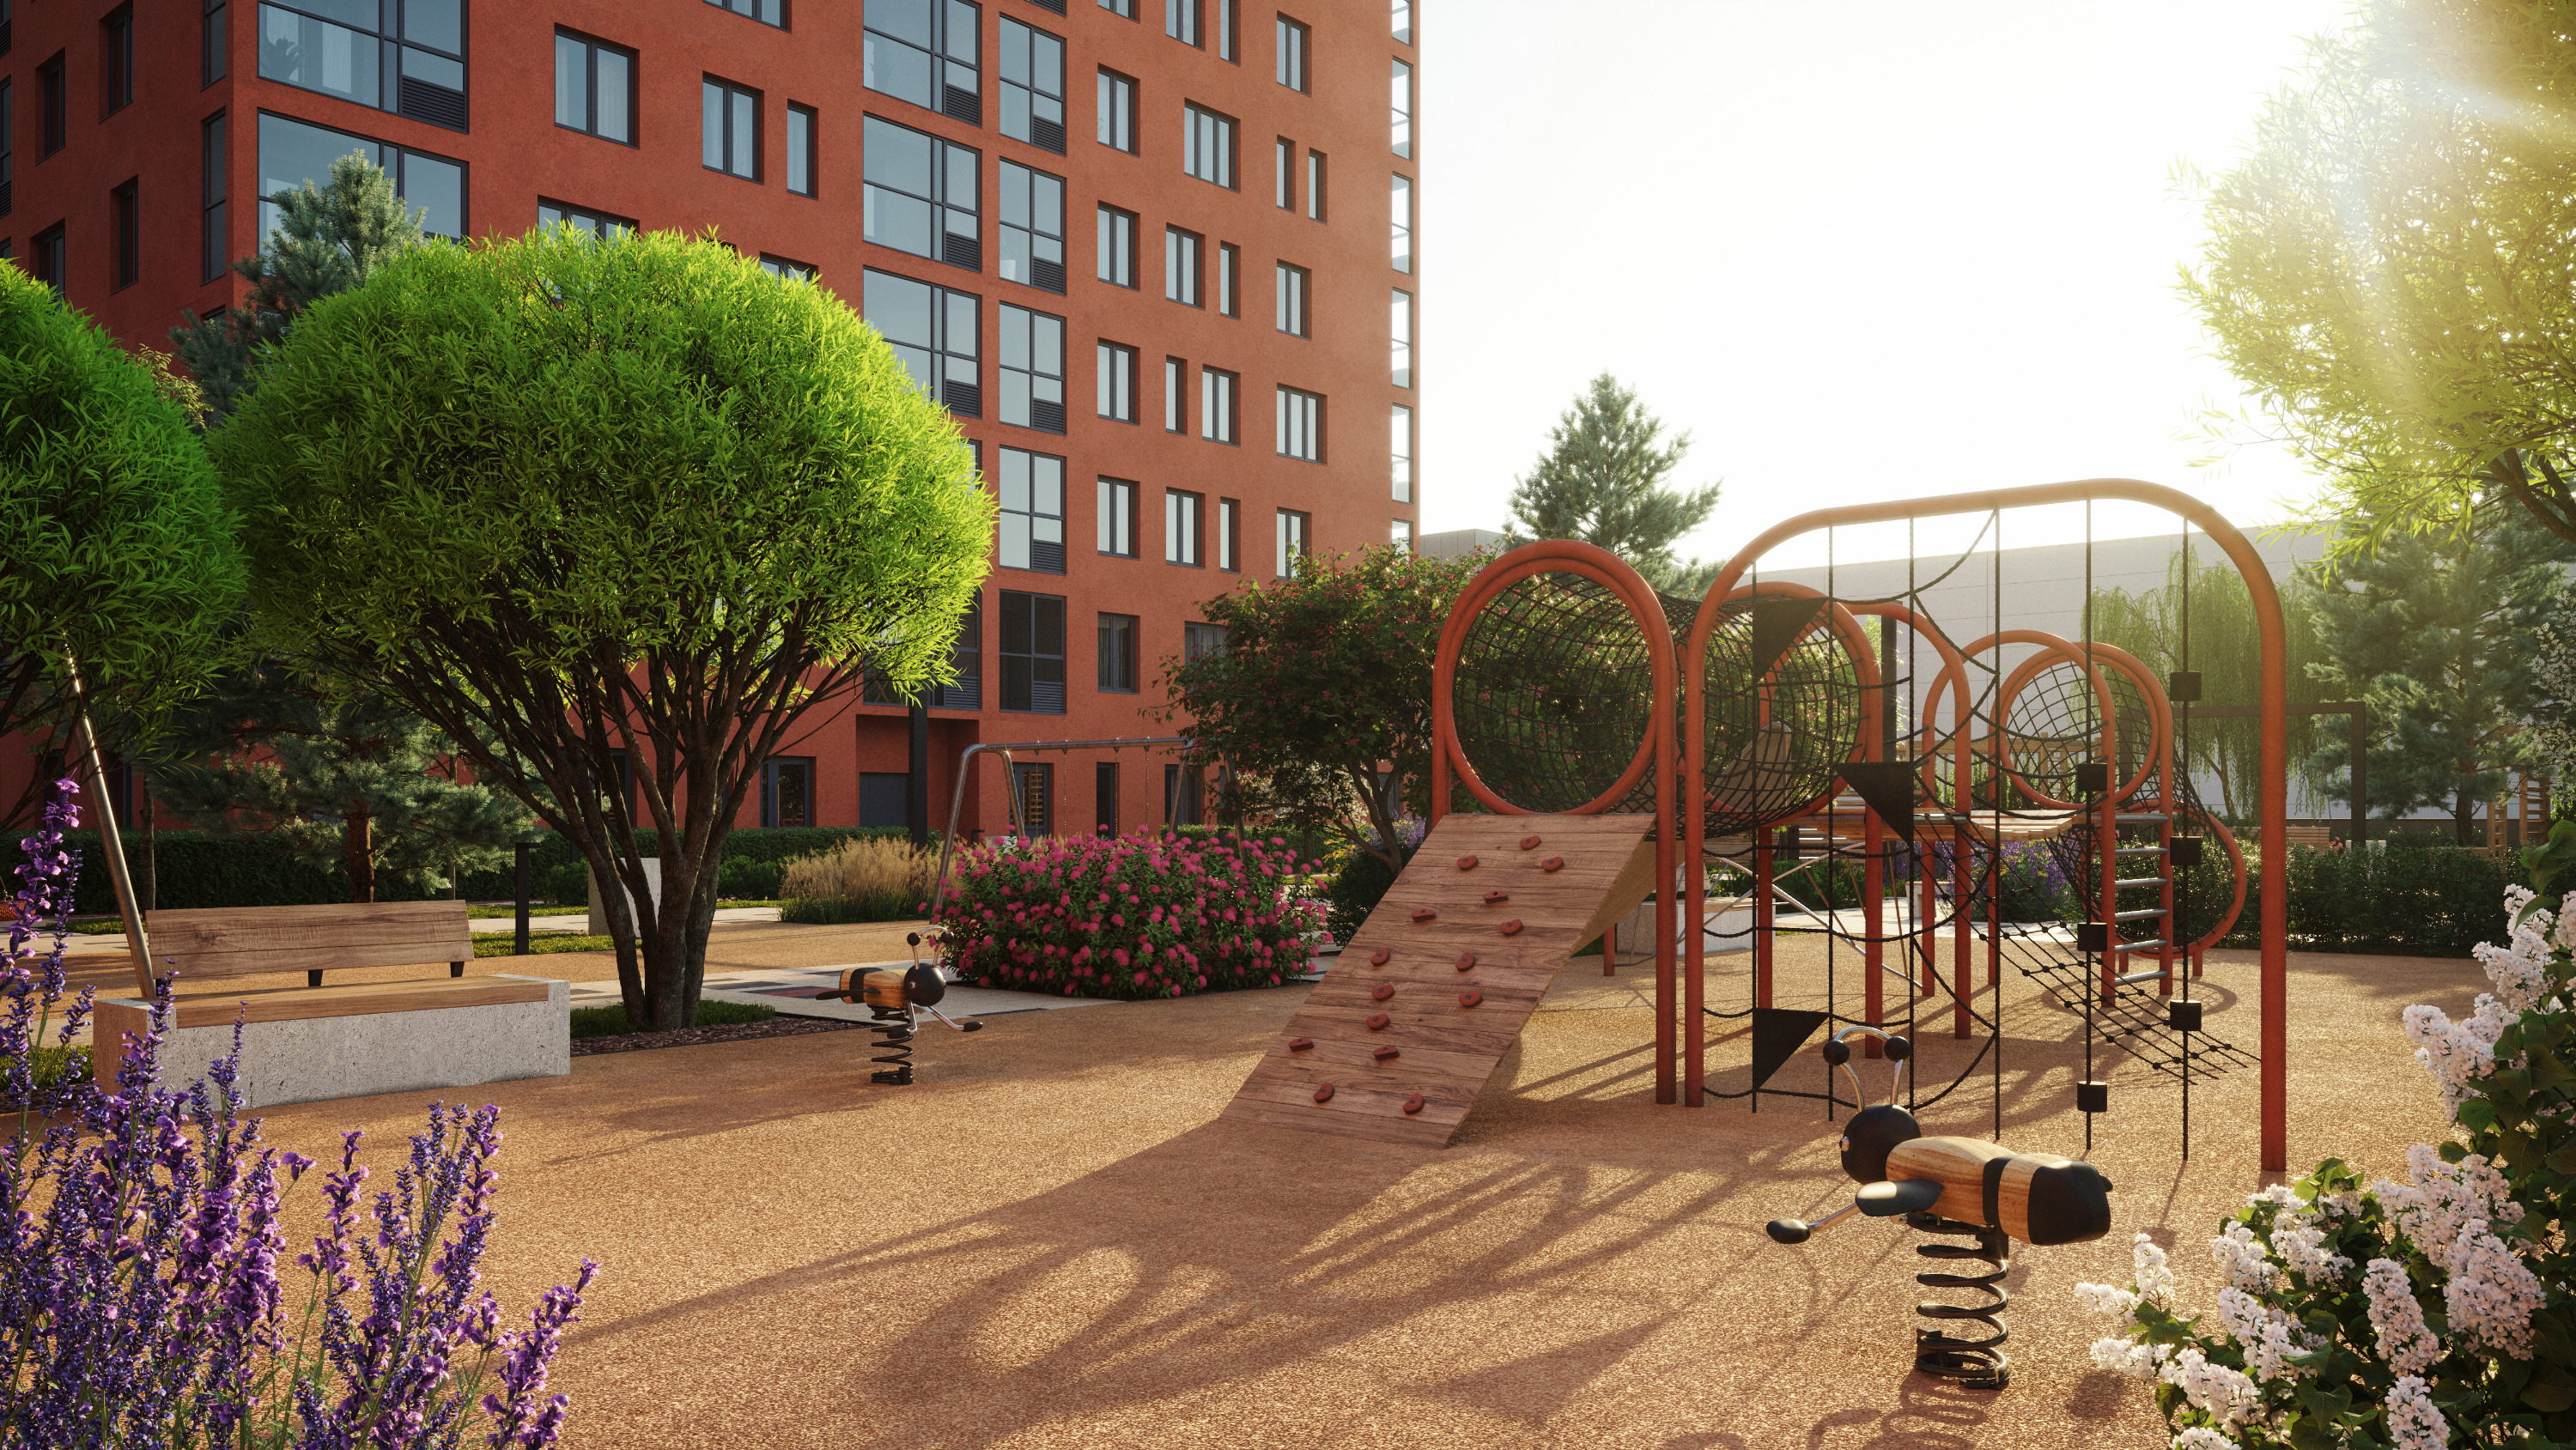 Площадки созданы для каждой возрастной группы, чтобы дети могли развиваться в процессе игры